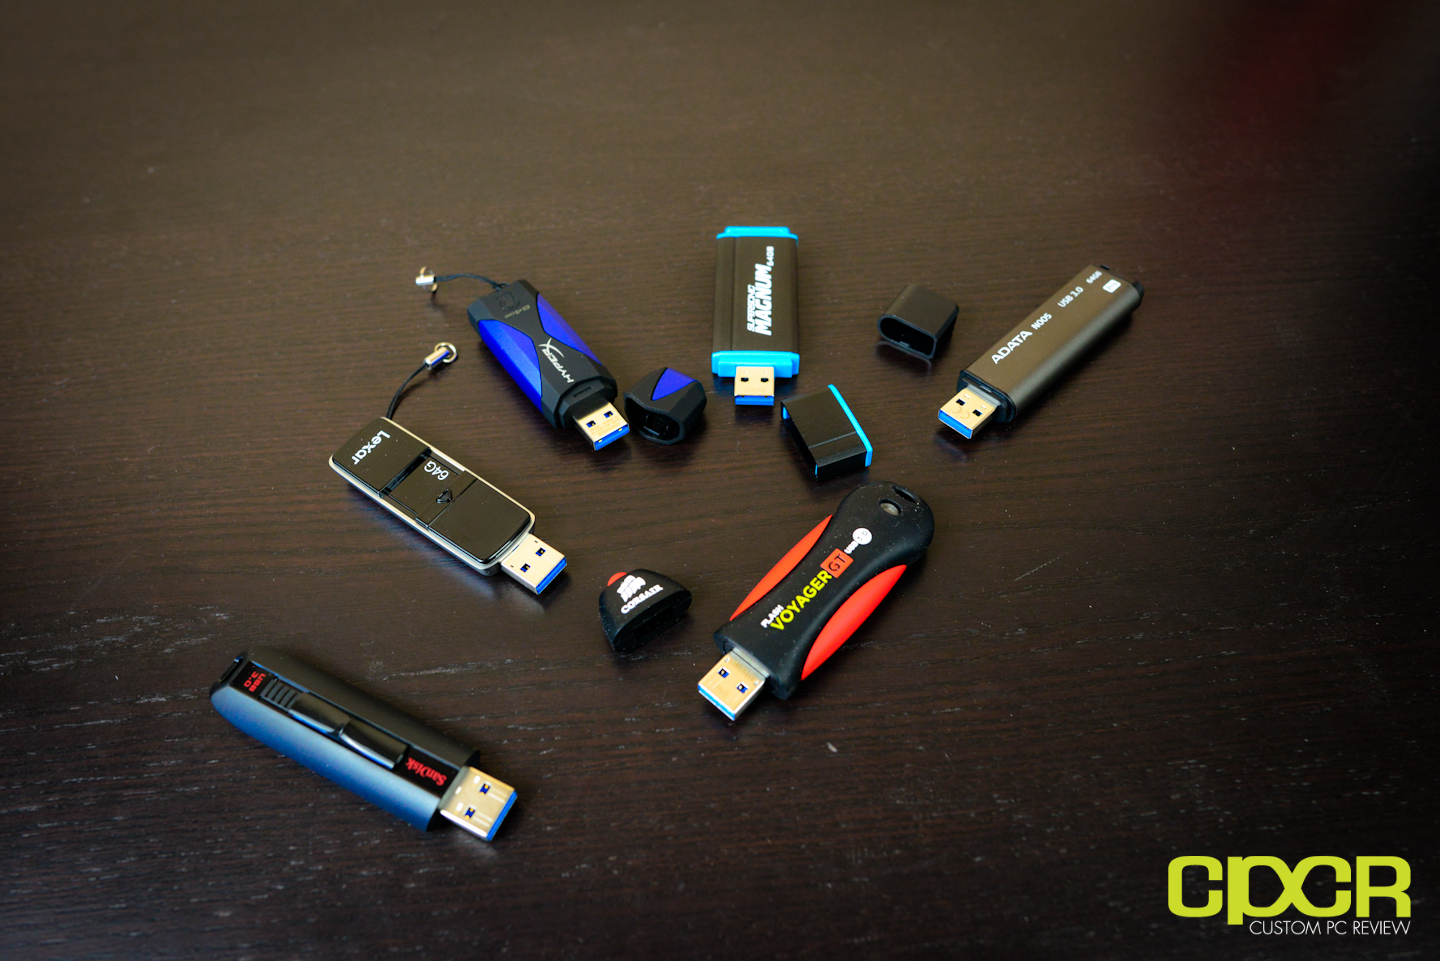 Best USB Flash Drive: Six USB 3.0 Flash Drives Compared